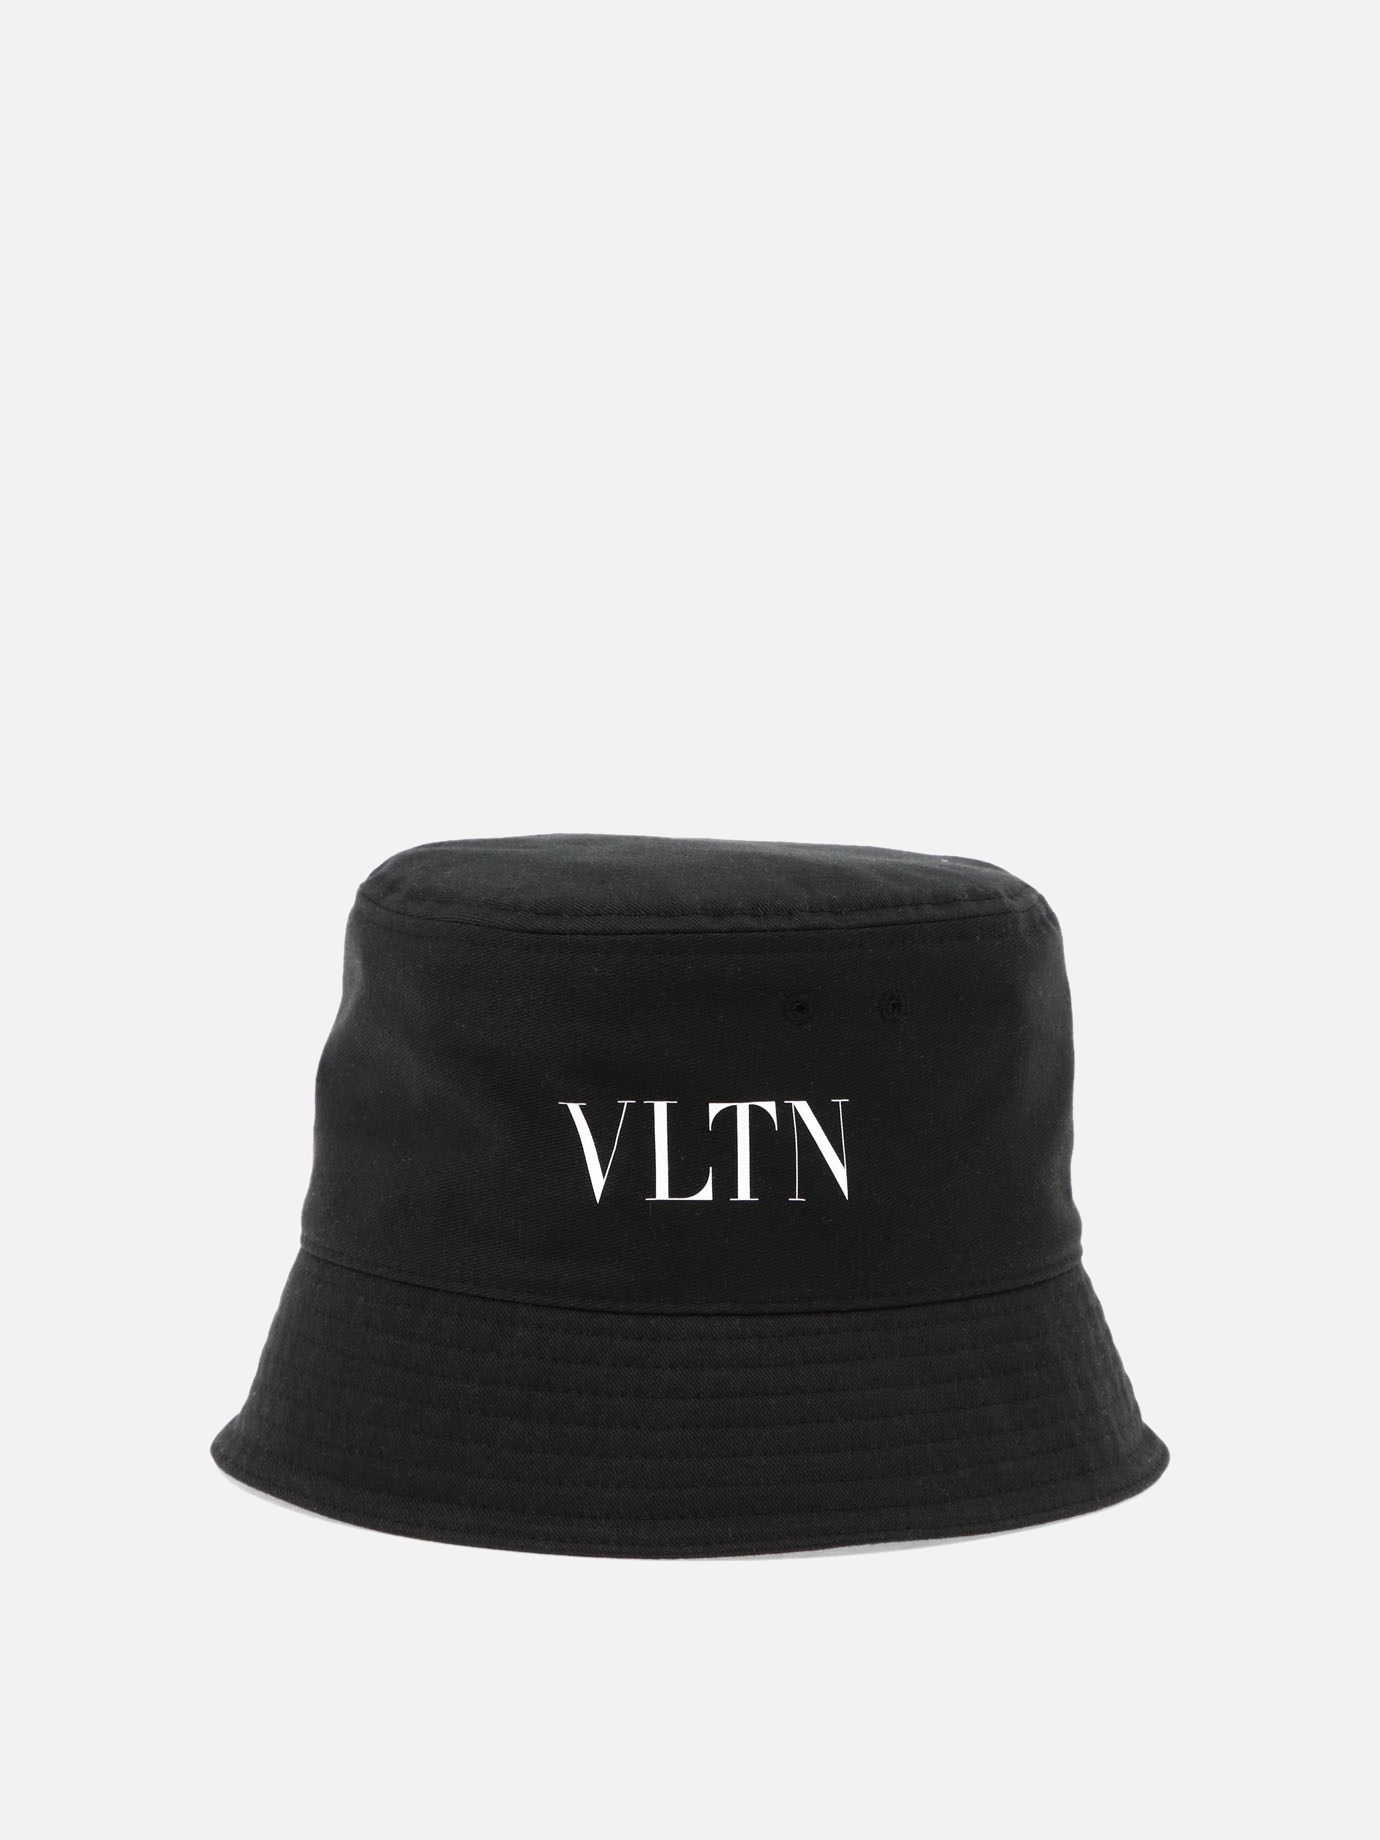  VLTN  bucket hat by Valentino Garavani